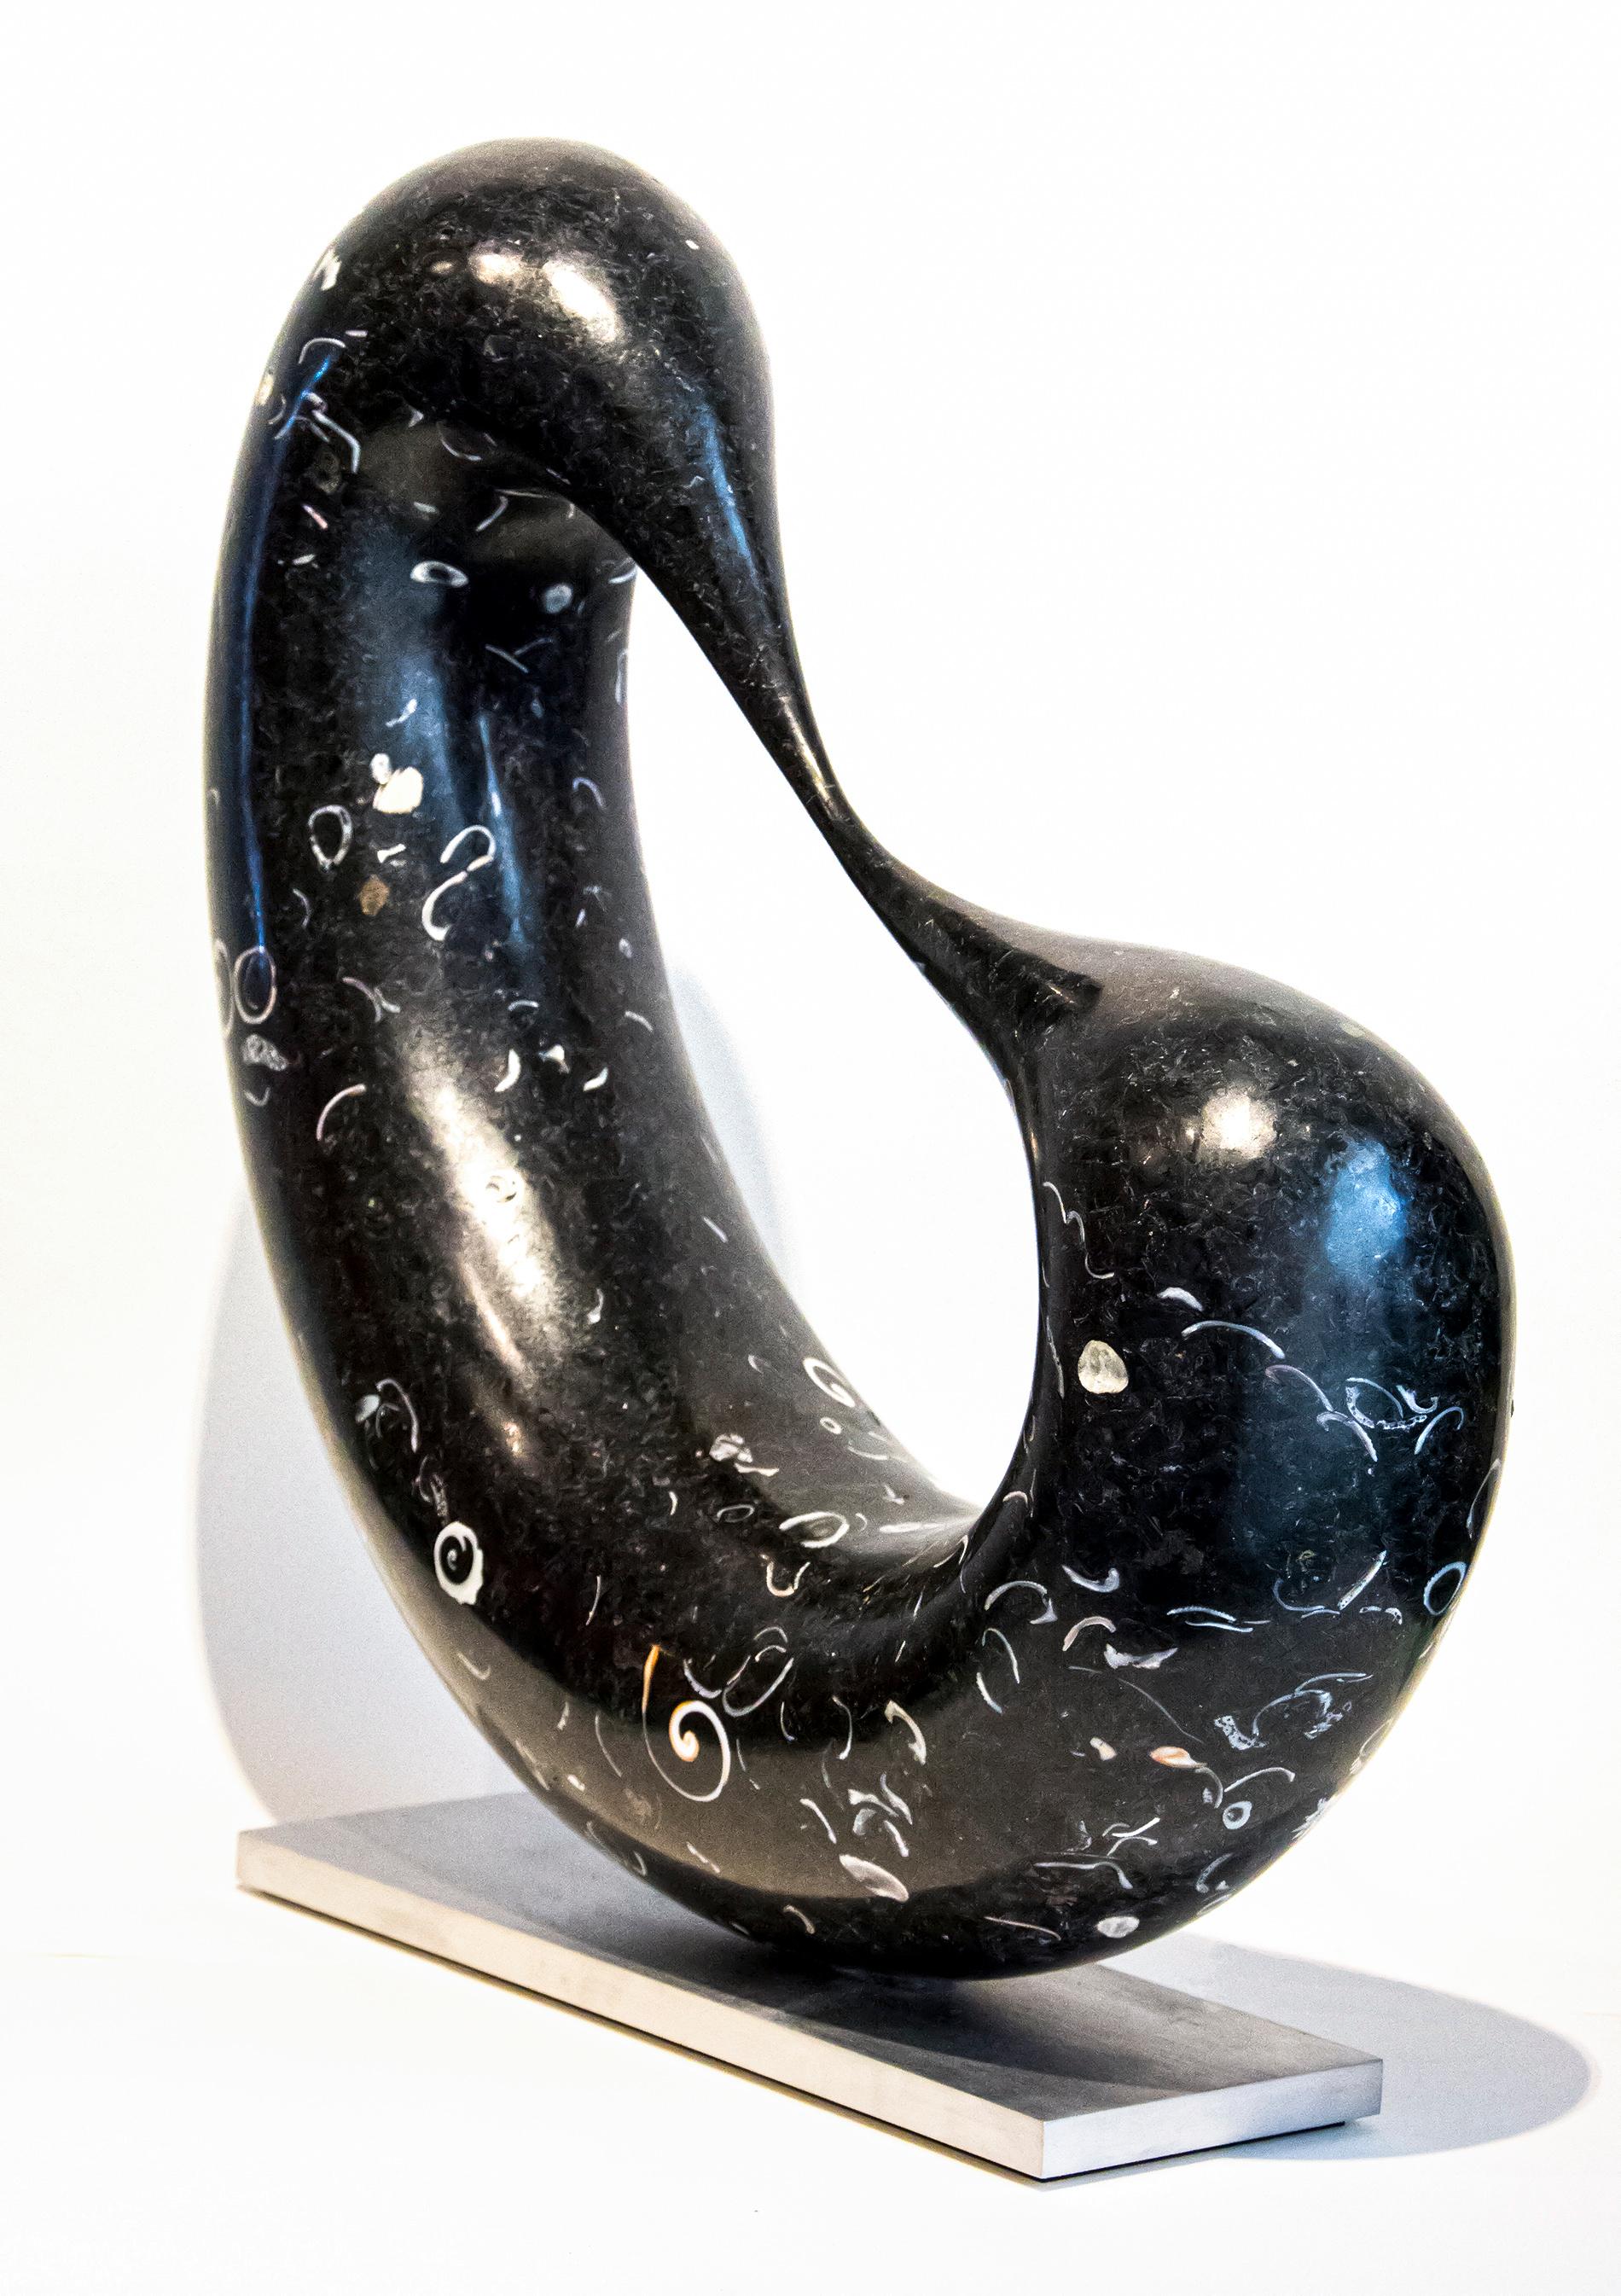 Bridge 20/50 - smooth, black granite, indoor/outdoor, abstract sculpture - Black Abstract Sculpture by Jeremy Guy